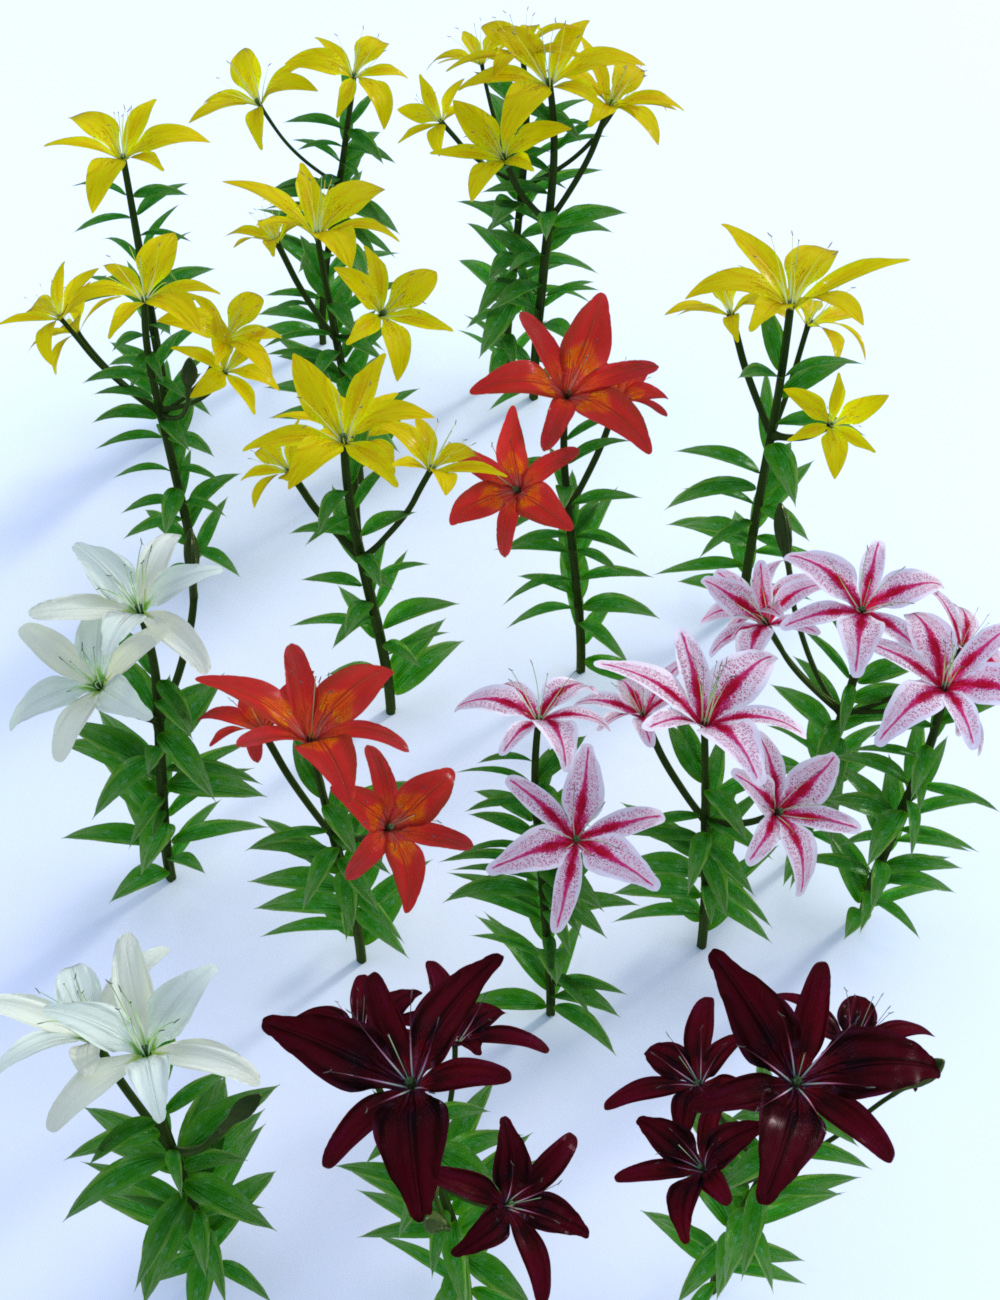 Garden Flowers - Asiatic Lilies by: MartinJFrost, 3D Models by Daz 3D